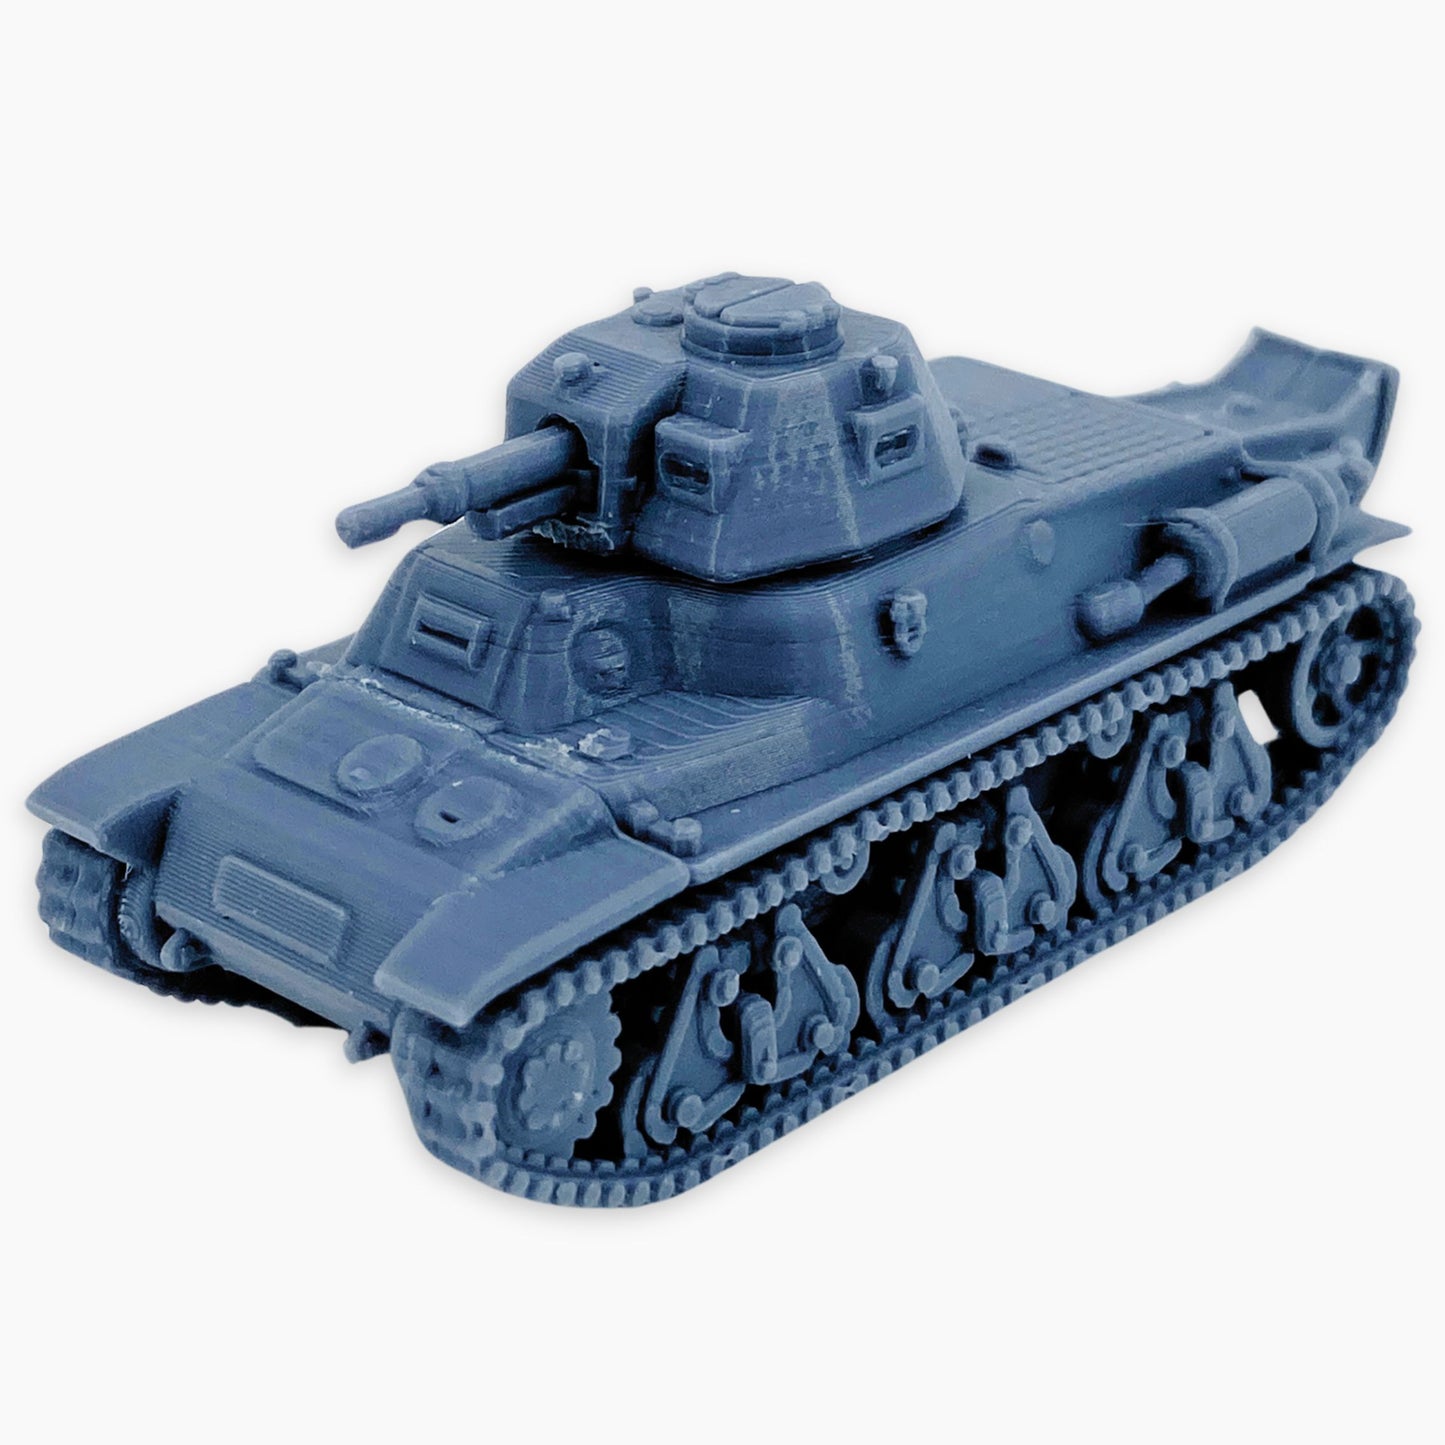 Panzerkampfwagen 38H 735(f)